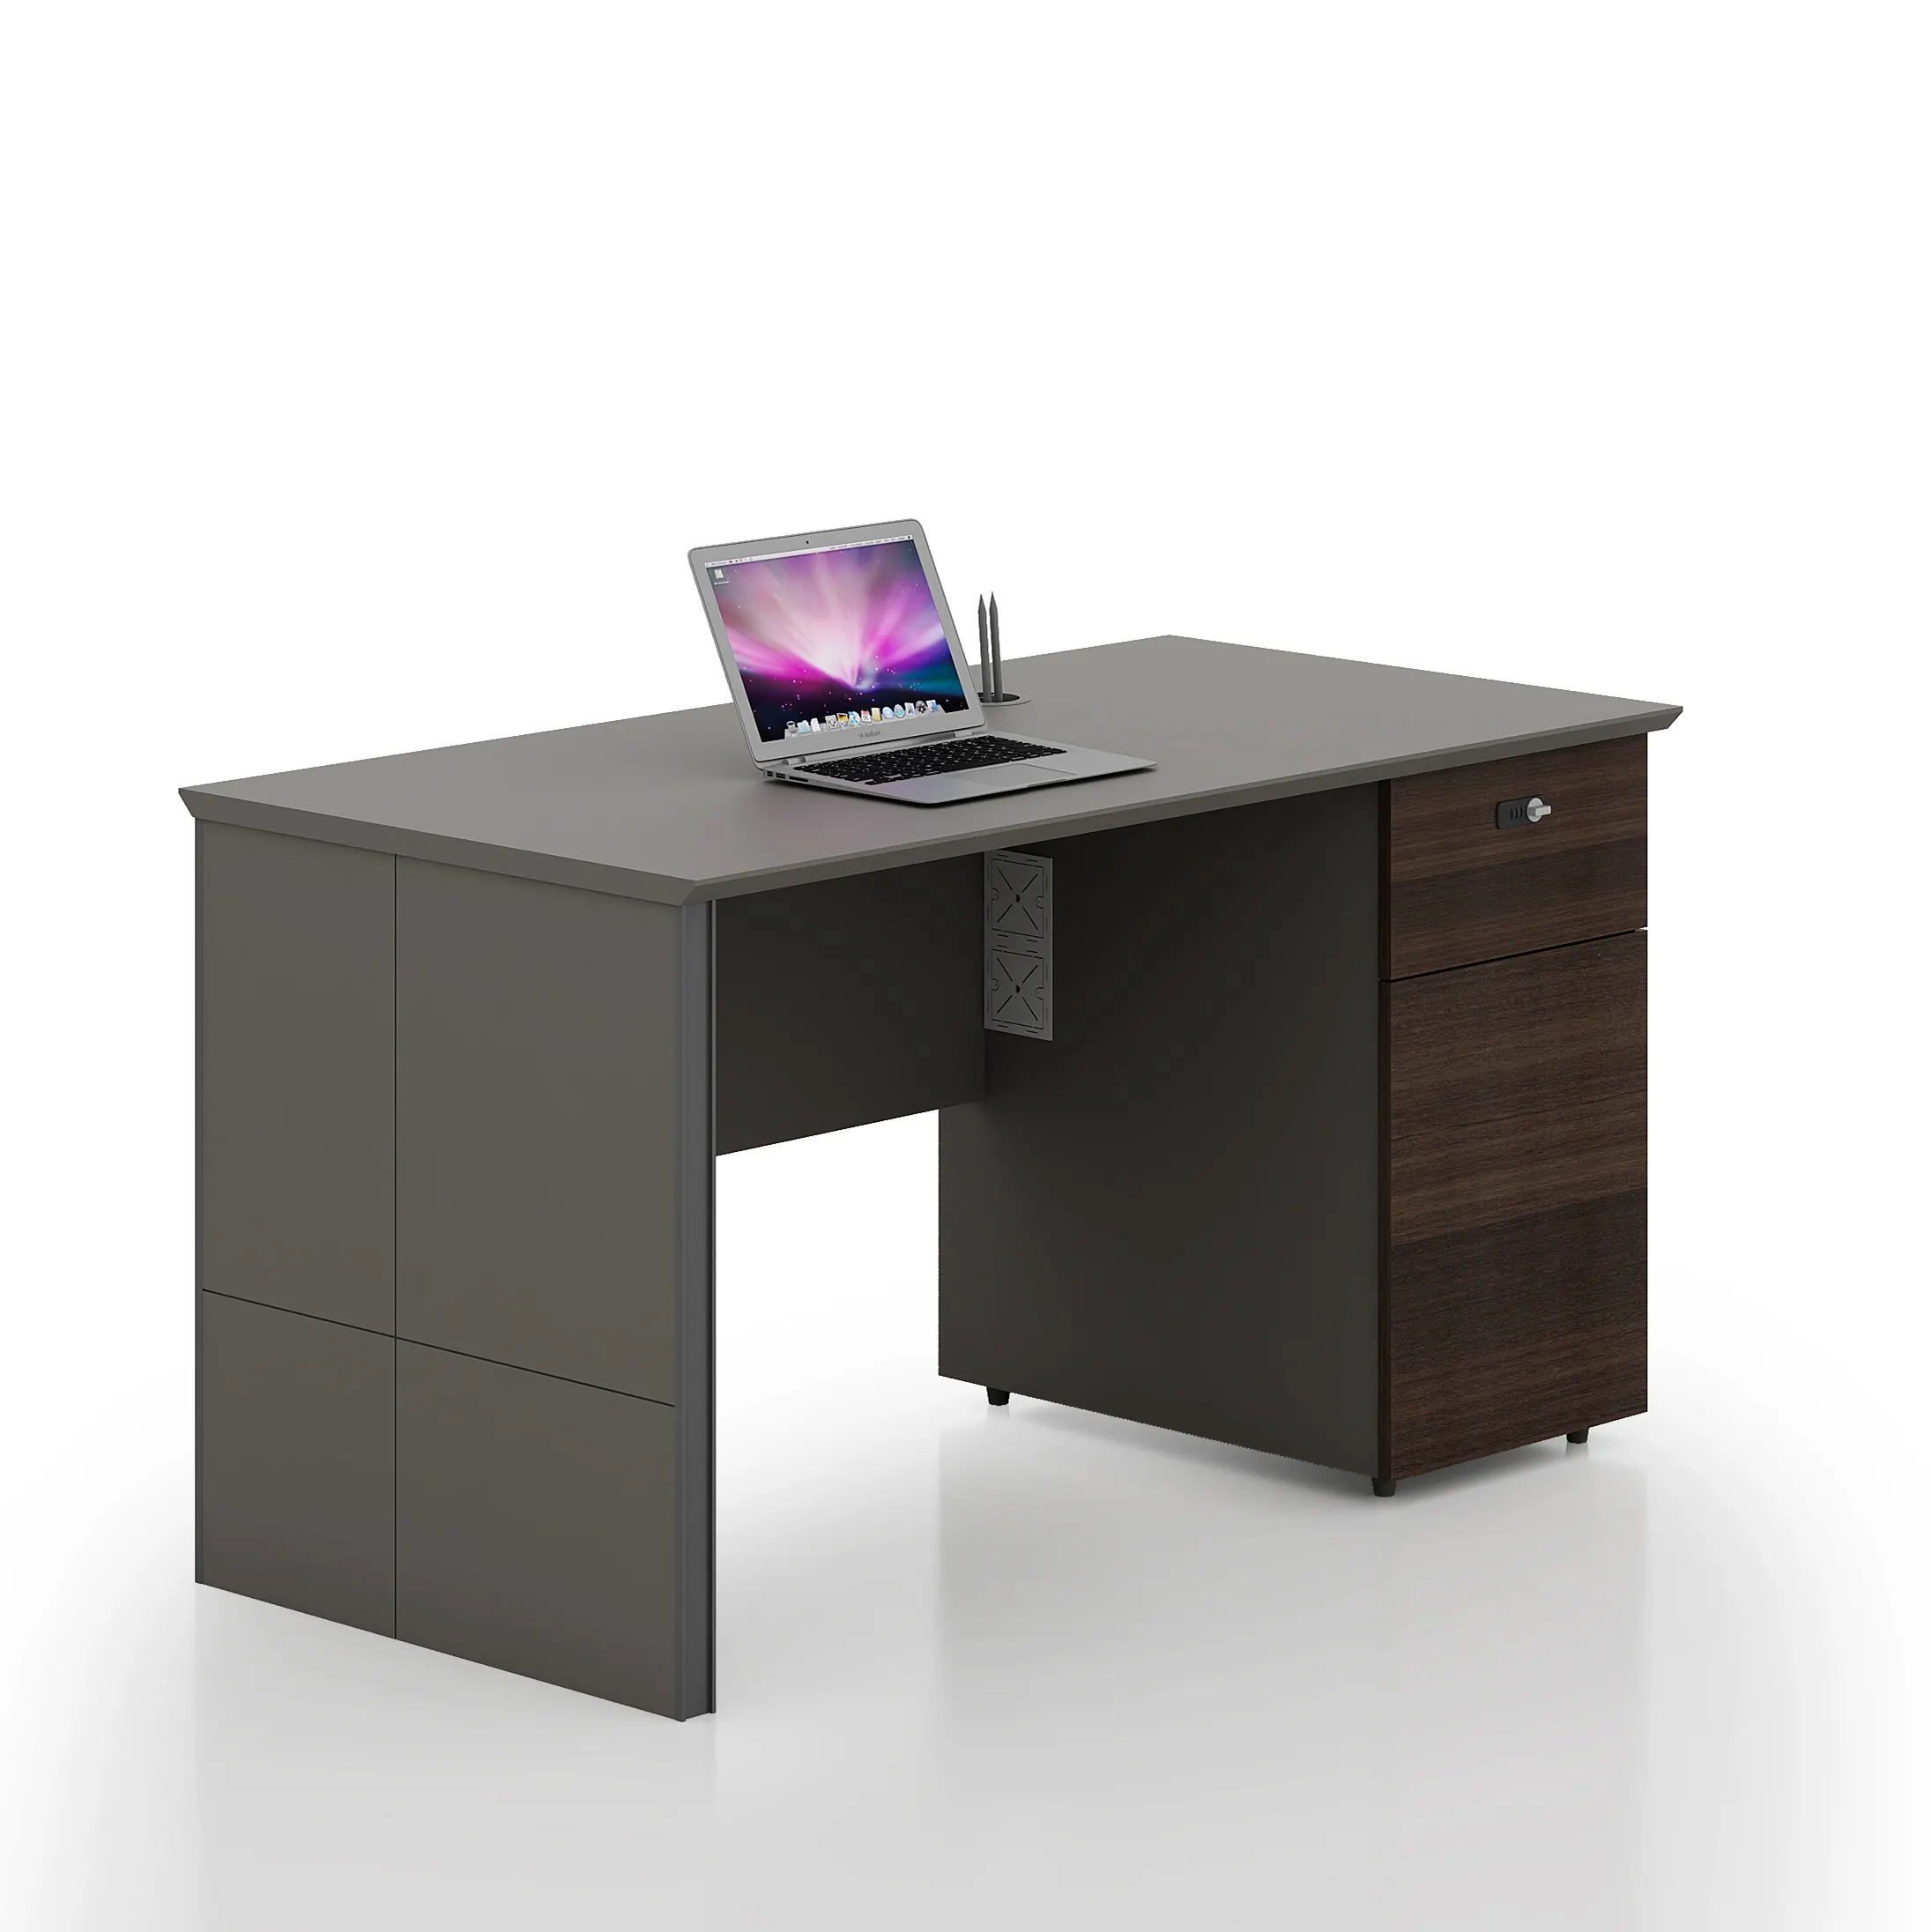 Профессиональная офисная мебель из меламина, МДФ, исполнительный стол, настраиваемая мебель, коммерческий компьютерный стол, Рабочий стол maten